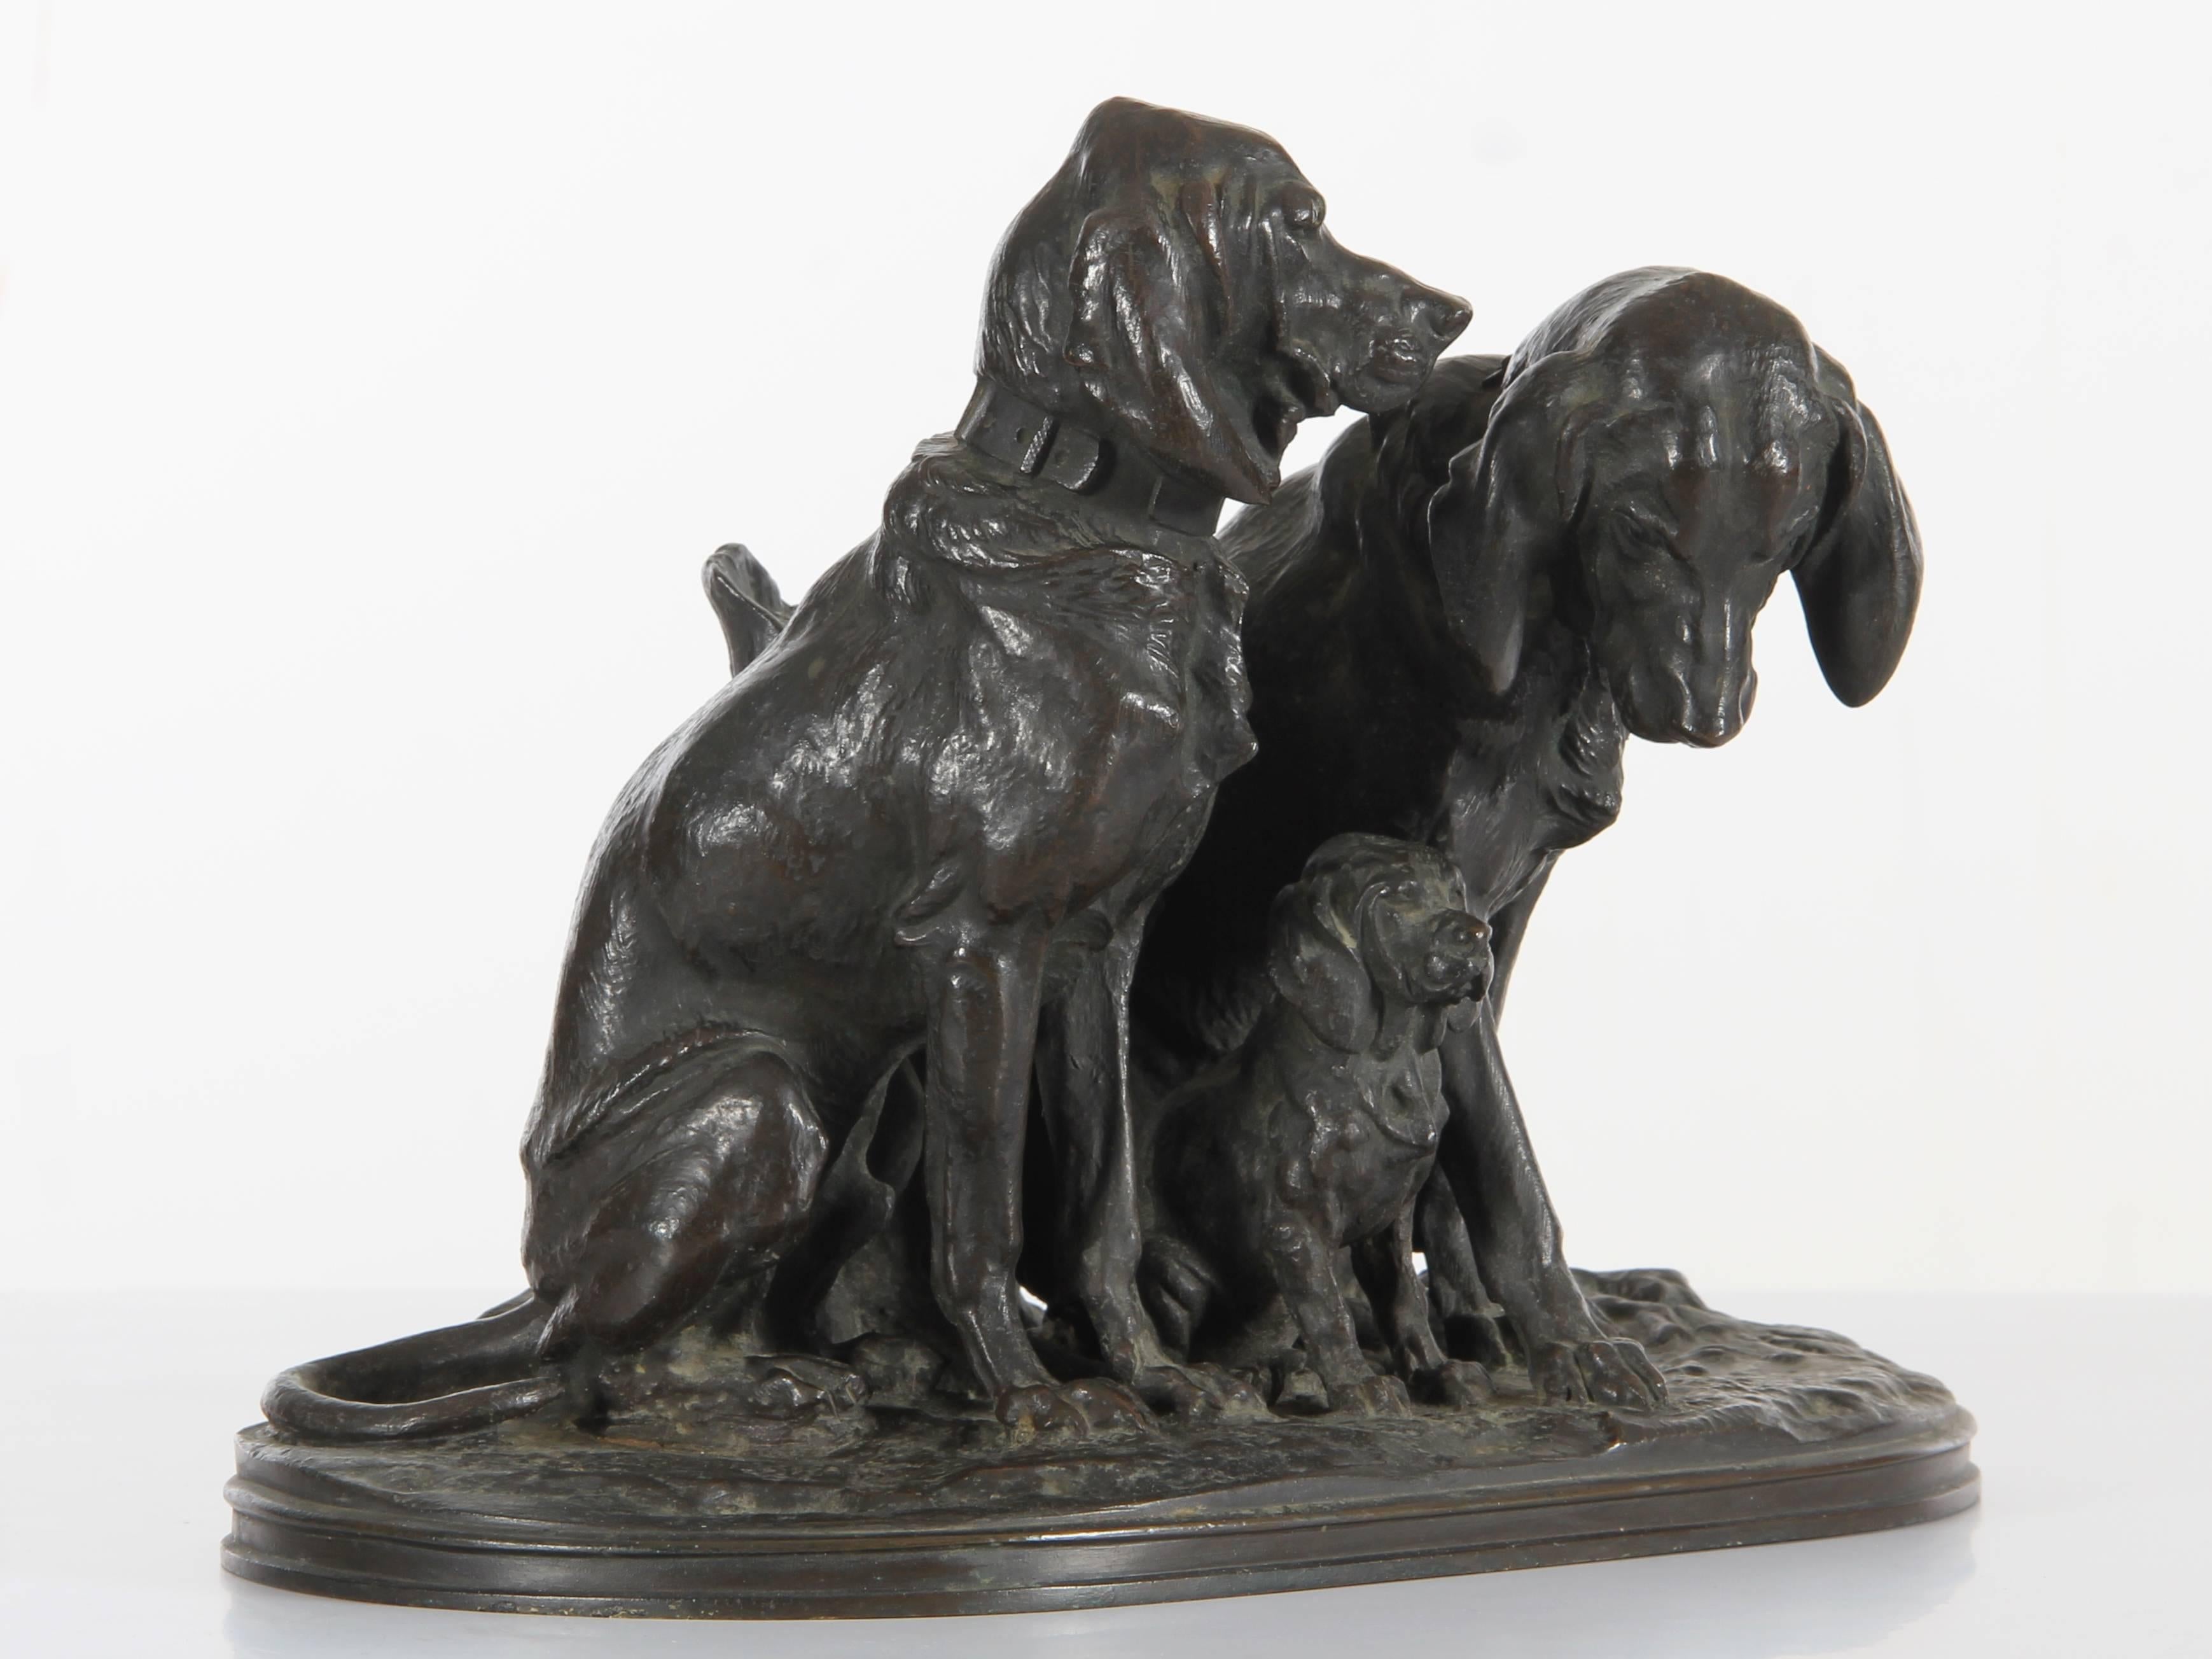 Alfred Jacquemart (français, 1824-1896) groupe figuratif en bronze de trois chiens d'arrêt de chasse, dont un chiot, assis près d'une souche d'arbre, sur une base naturaliste d'herbe, de feuilles et de racines. Patine brune d'origine. Signé A